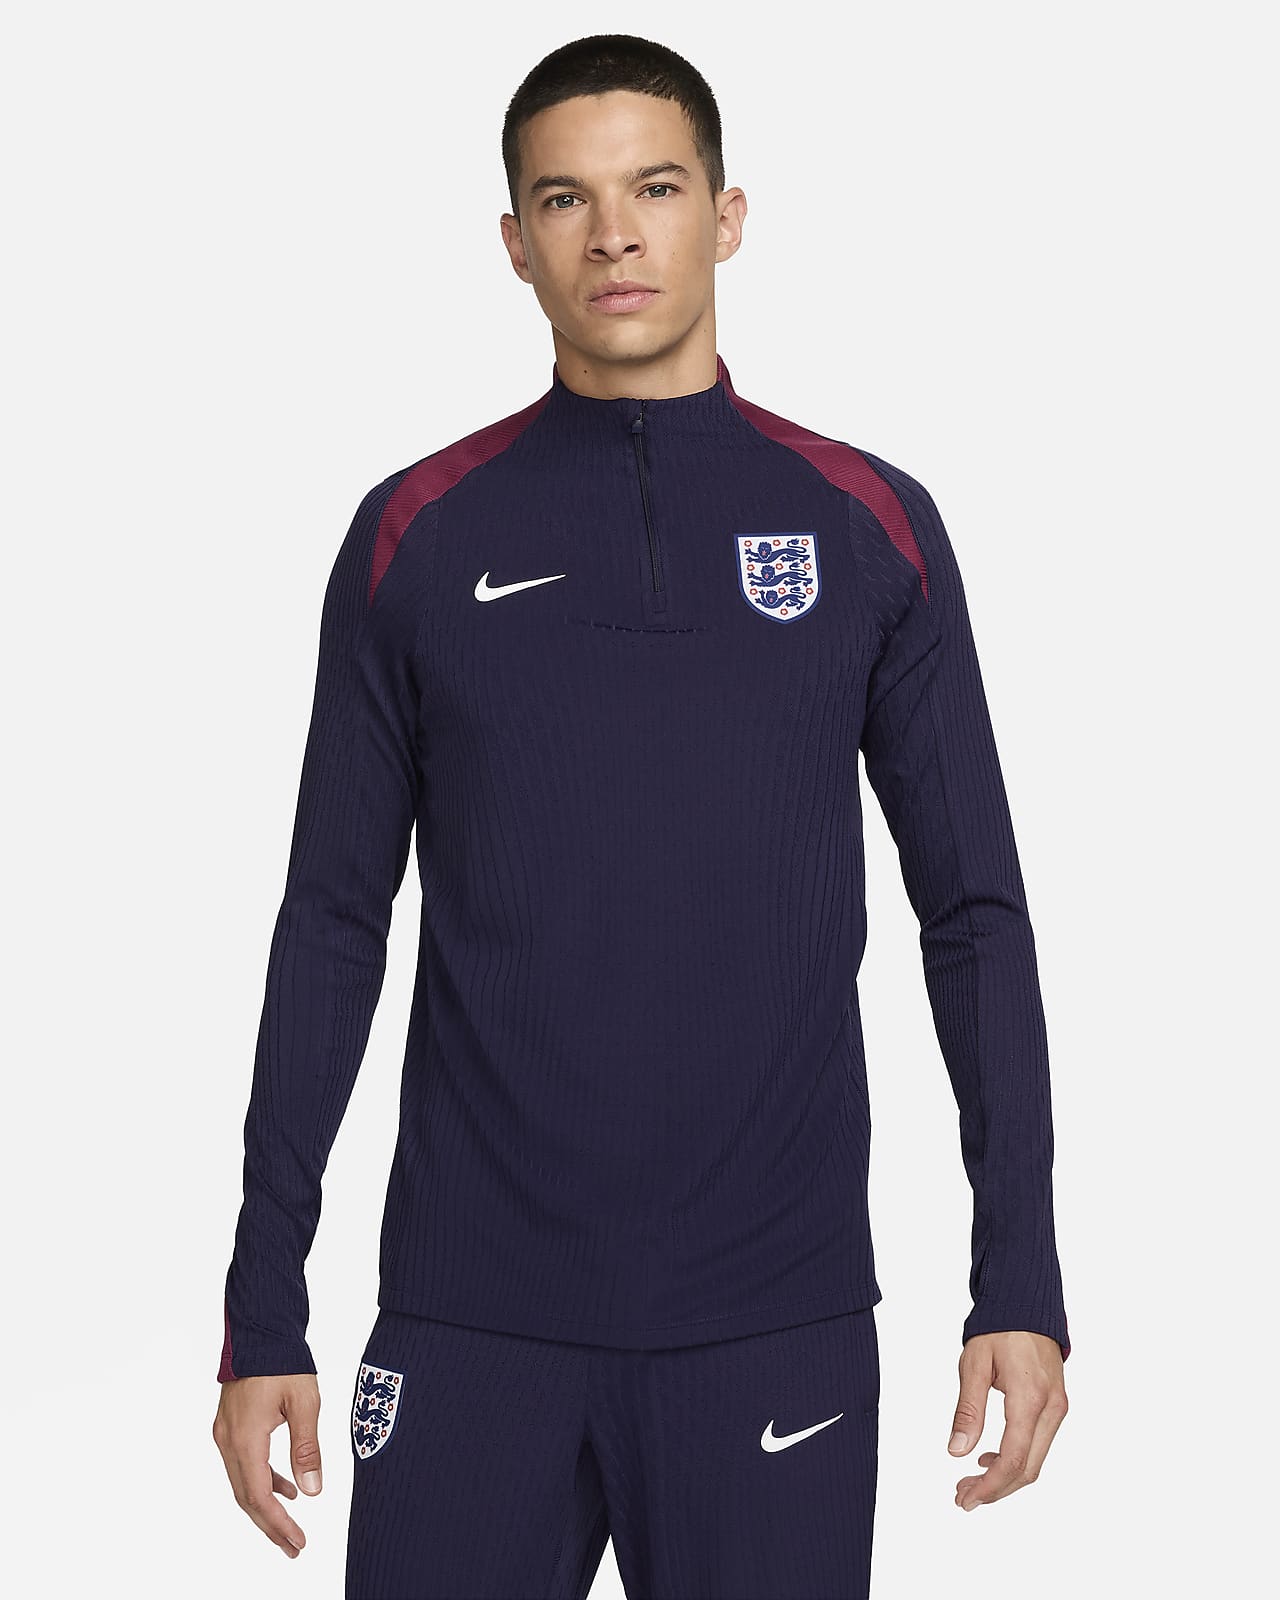 Maglia da calcio per allenamento Nike Dri-FIT ADV Inghilterra Strike Elite – Uomo